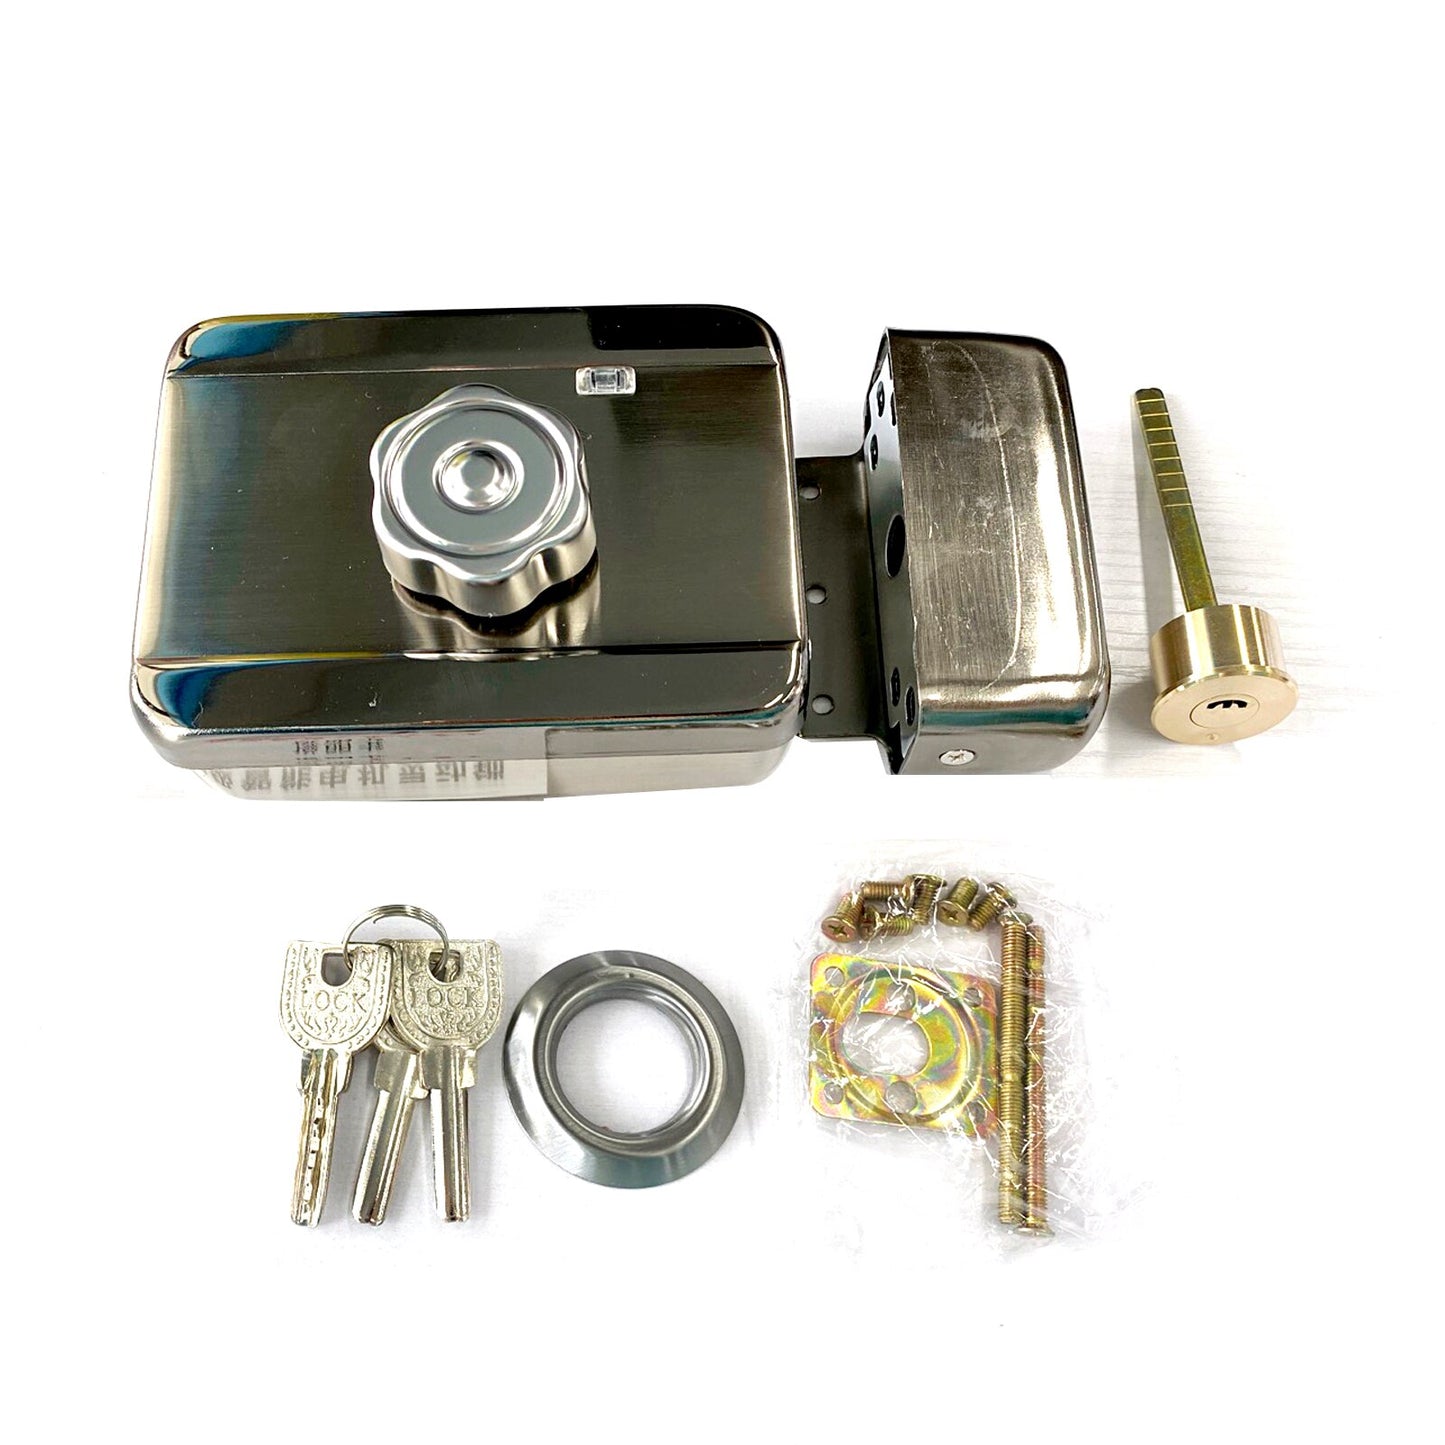 7-inch Video Door Phone Kit with ID Keyfobs + Electric Lock + Power Supply+ Door Exit for villa Video Doorbell video Intercom System